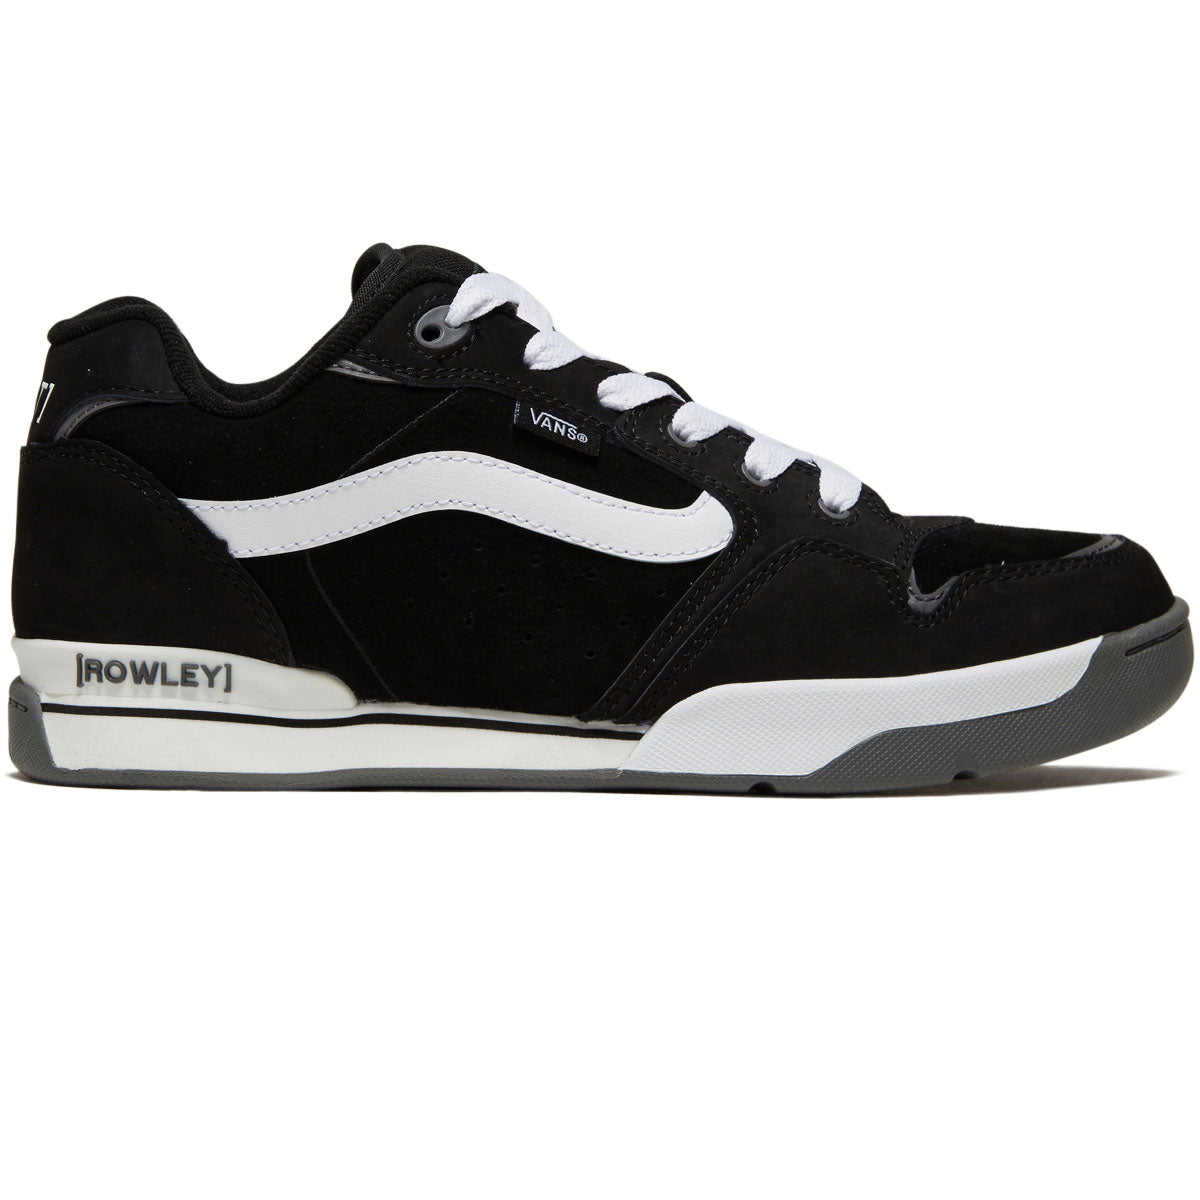 Vans Rowley XLT Shoes - Black/White image 1